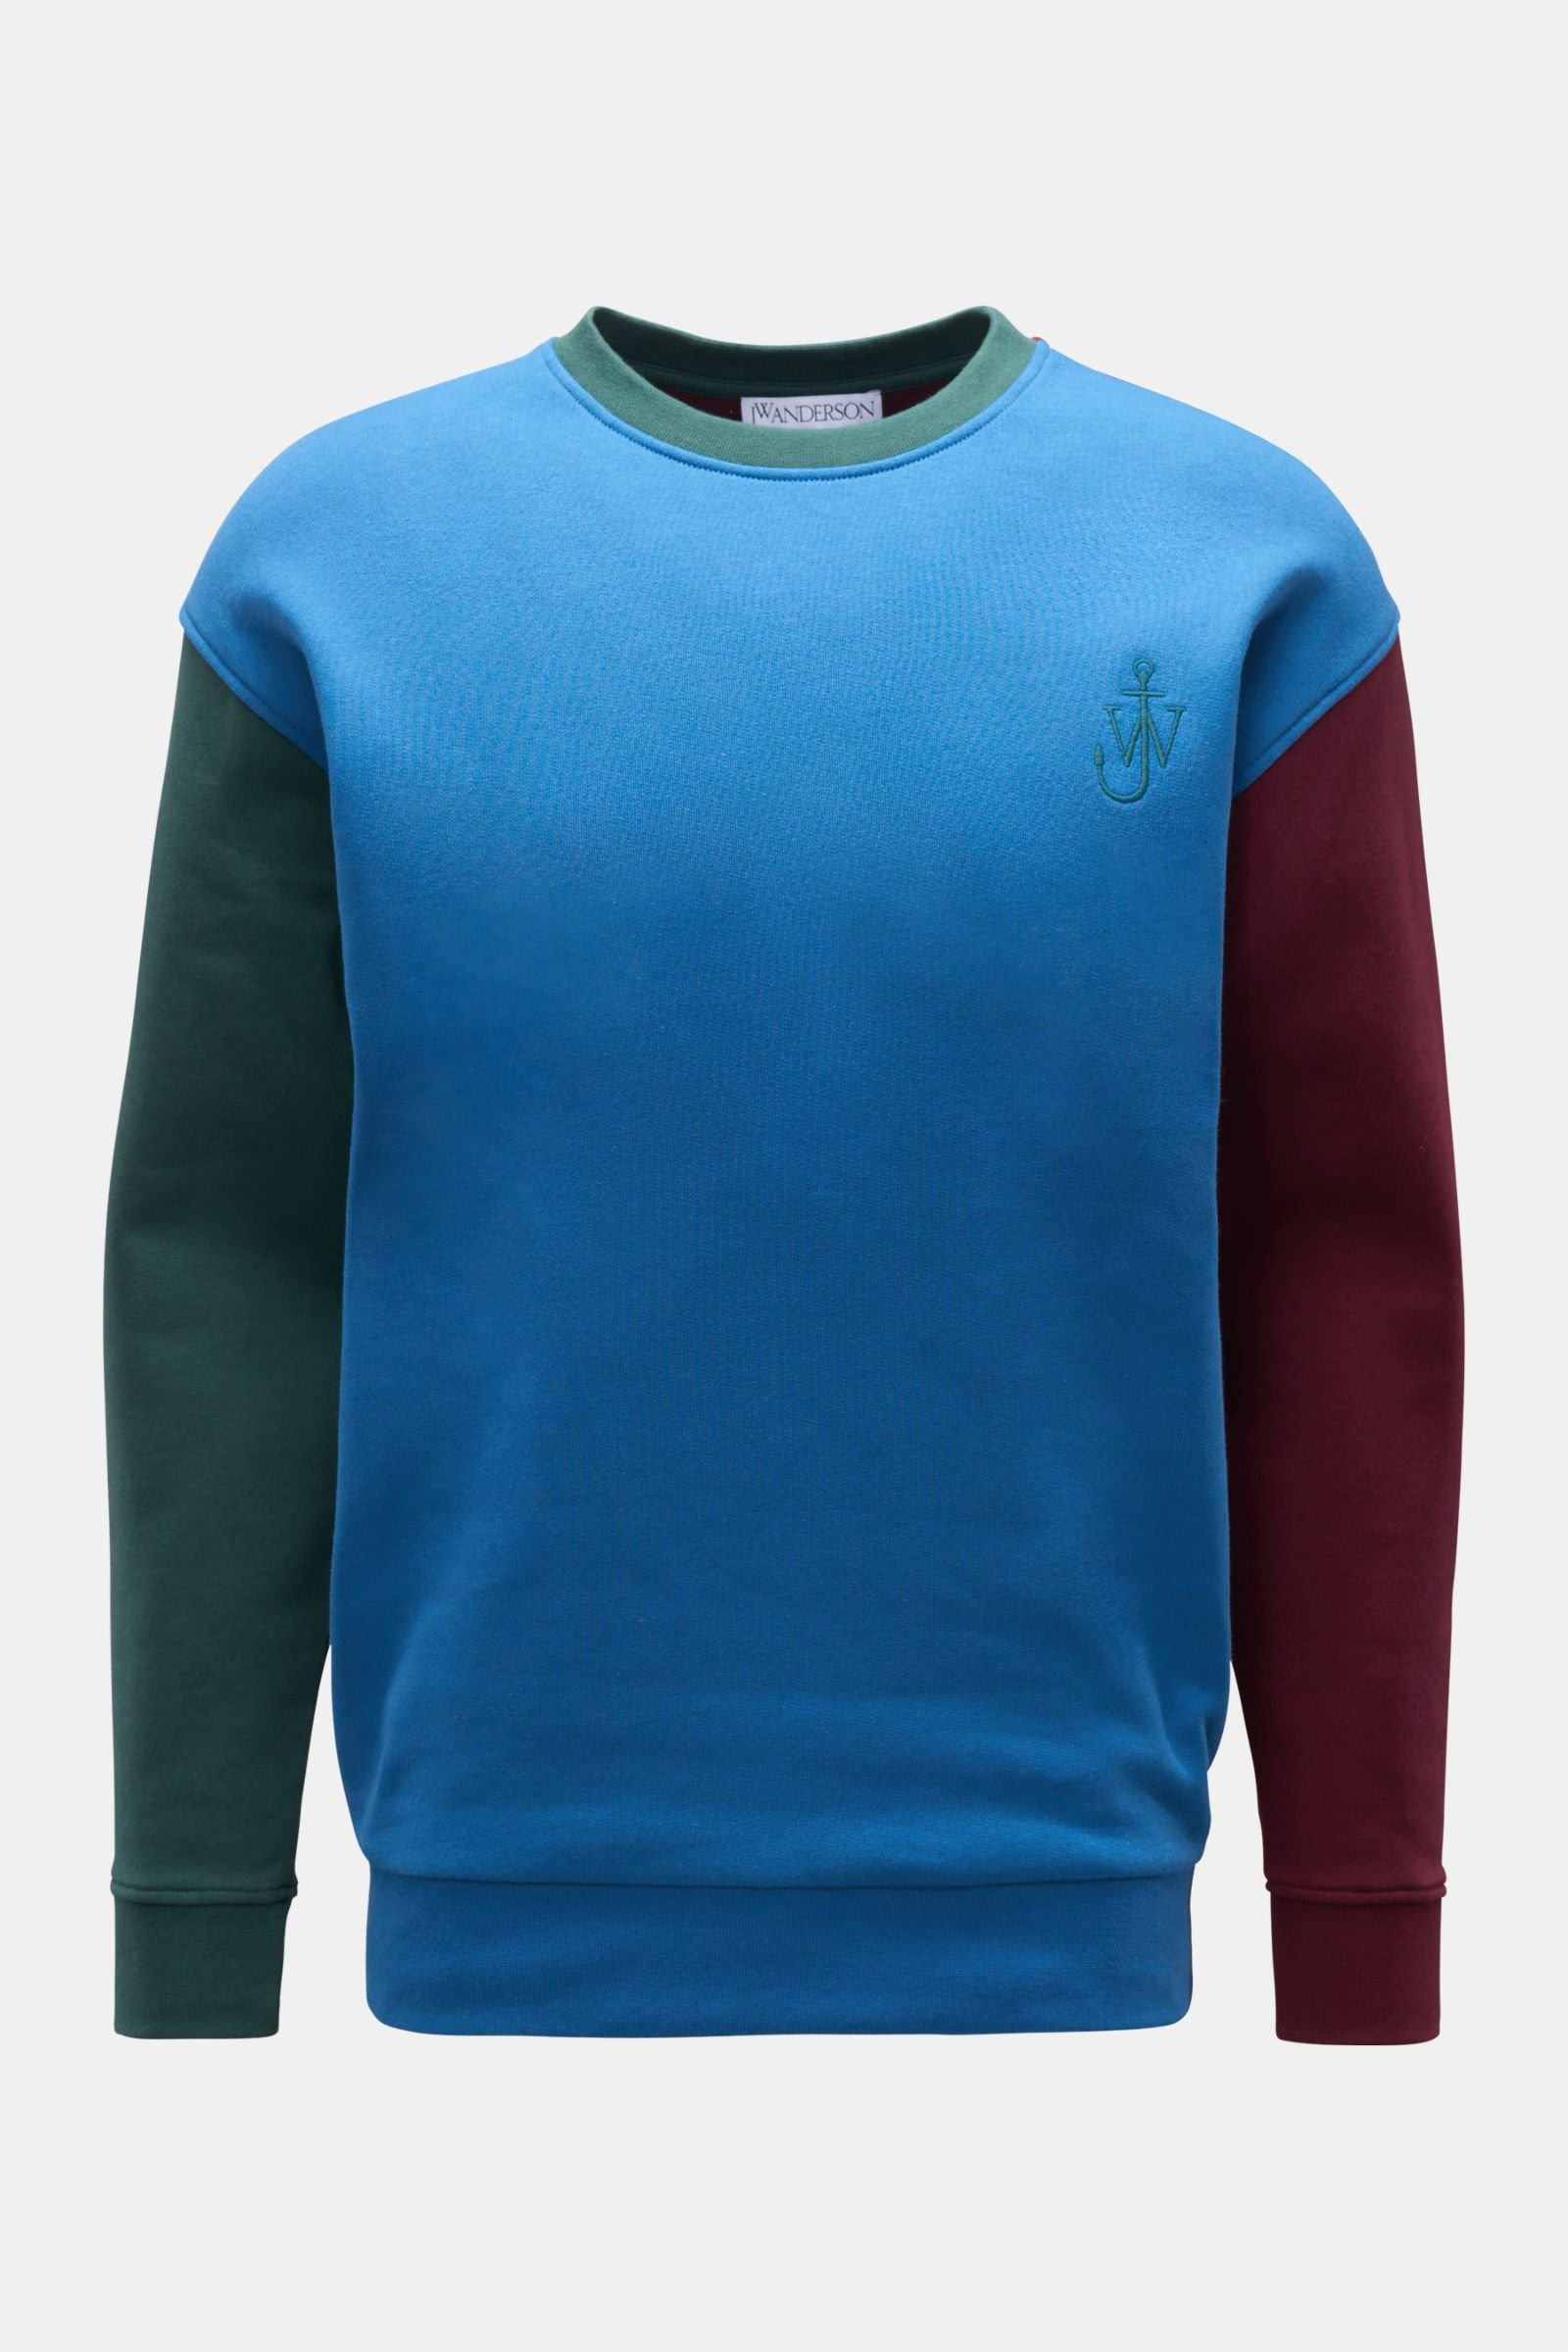 Rundhals-Sweatshirt blau/grün/bordeaux